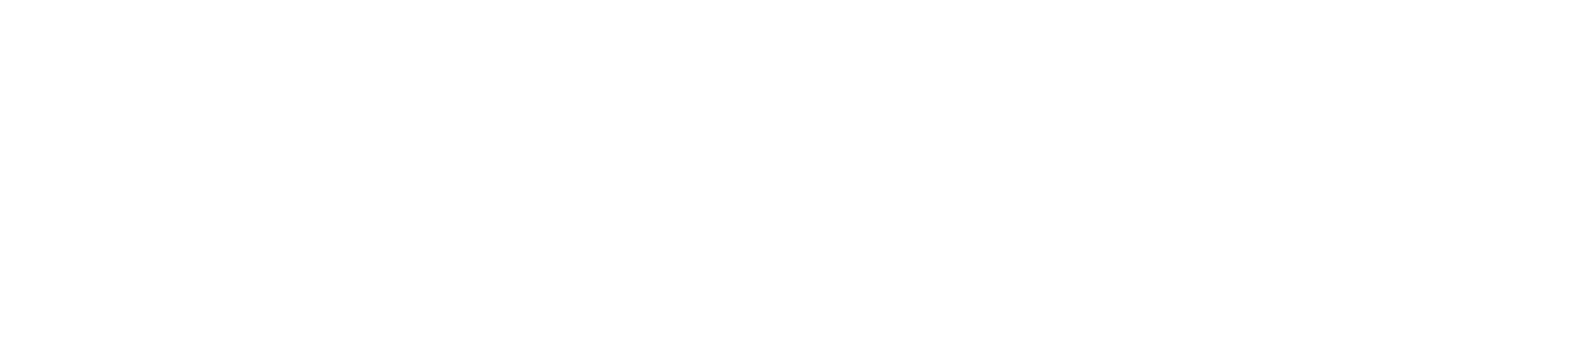 Commercial Vehicle Group (CVG) logo for dark backgrounds (transparent PNG)